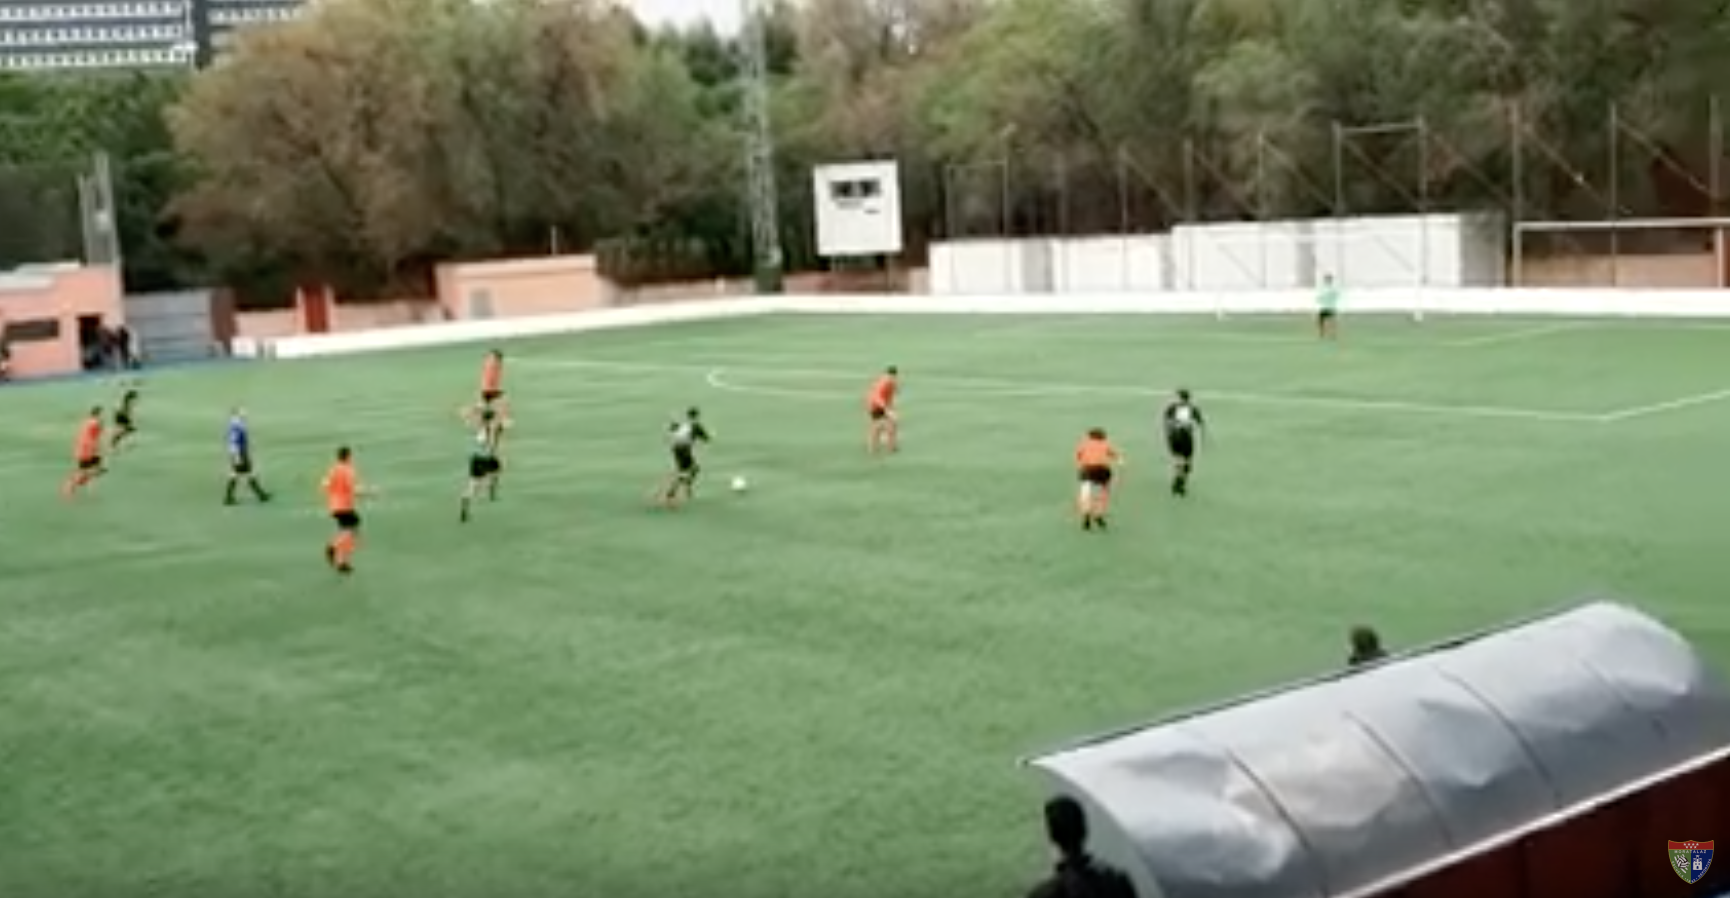 Vídeoresumen CF Liceo Sport – Juvenil G